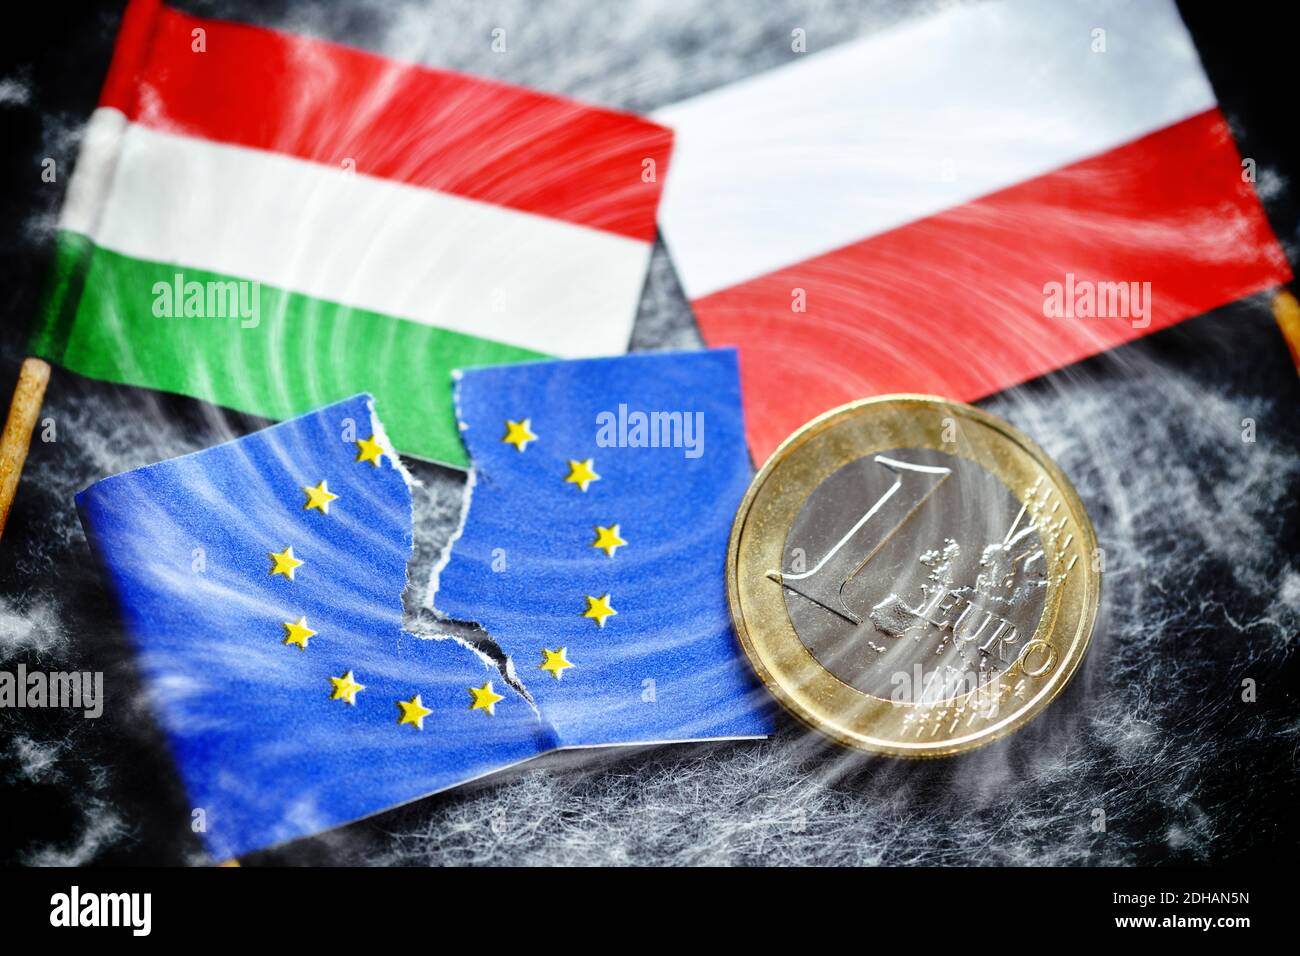 Angerissene EU-Fahne und Fahnen von Ungarn und Polen mit Euromünze, EU-Haushaltsstreit Foto de stock